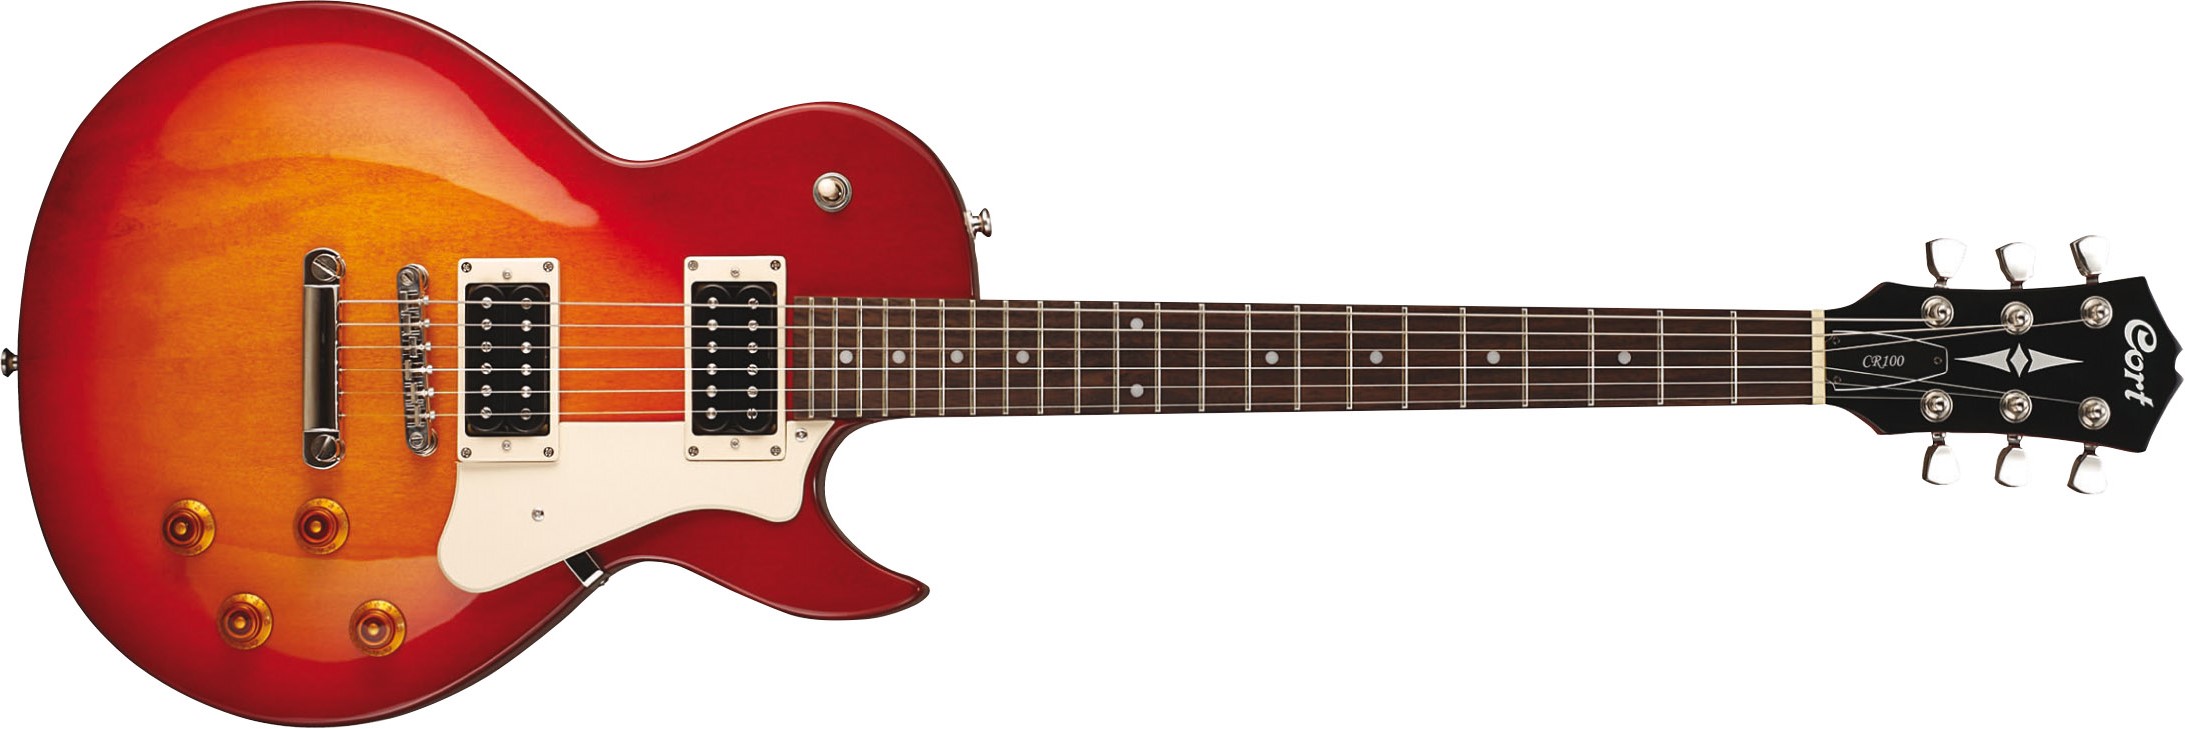 Cort Cr100 Crs Classic Rock Hh Ht - Cherry Red Sunburst - Guitarra eléctrica de corte único. - Variation 1